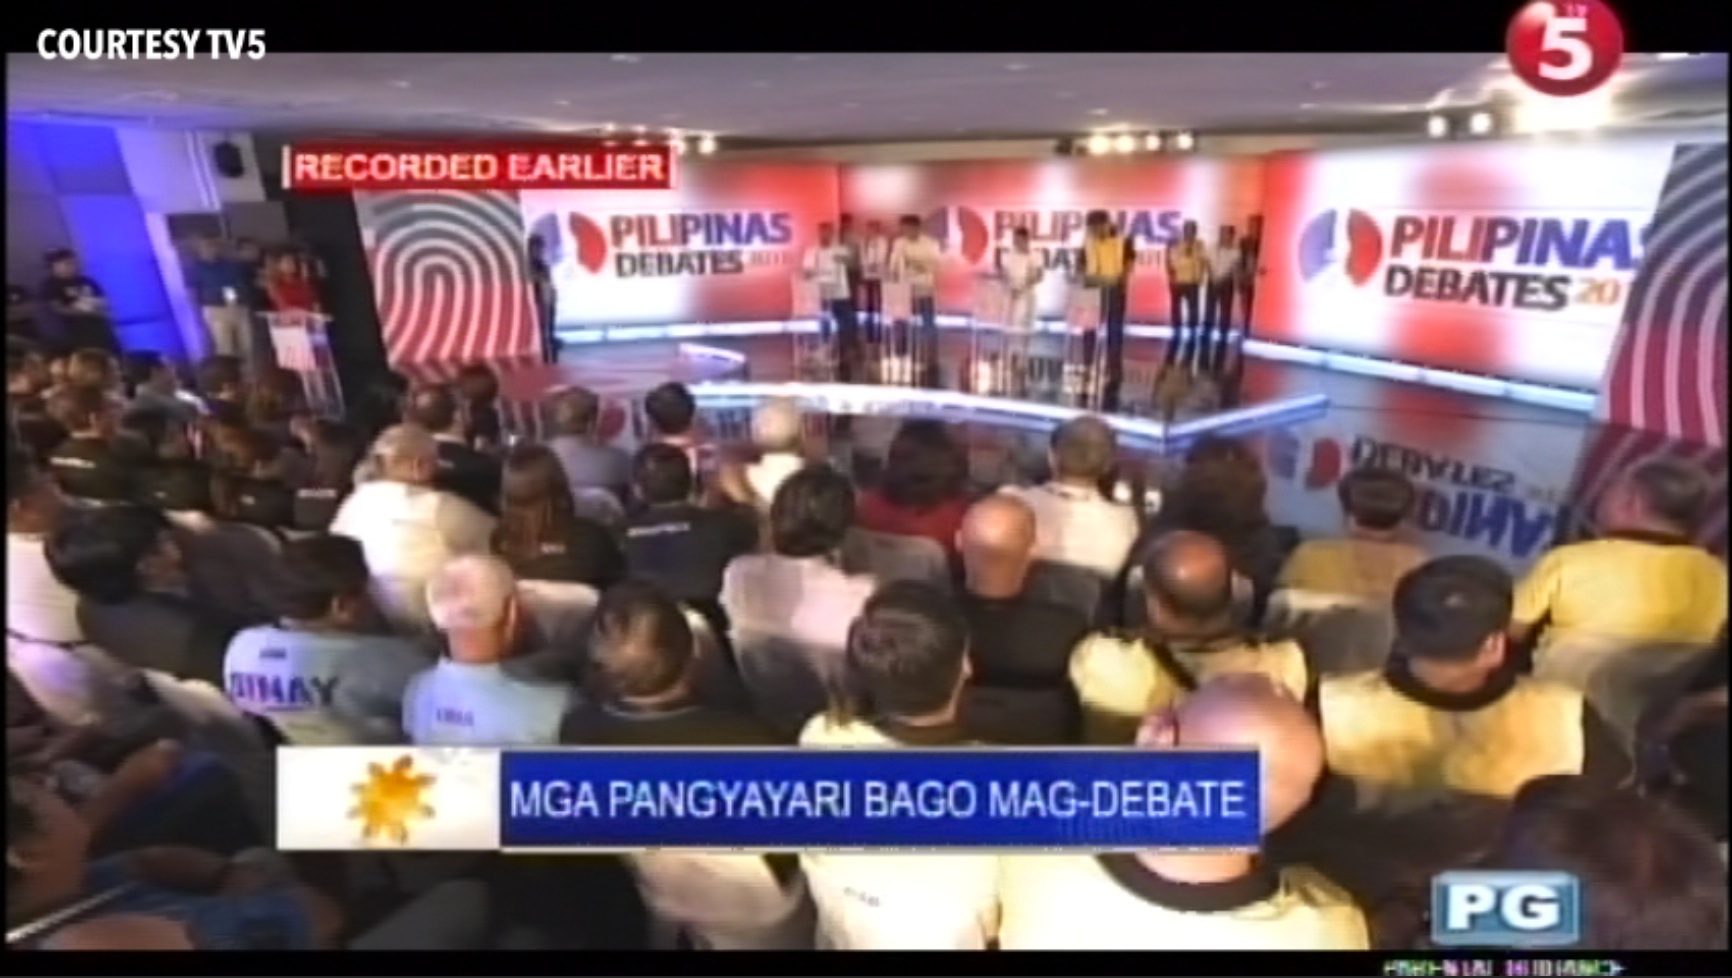 Fewer TV ads during Cebu presidential debate